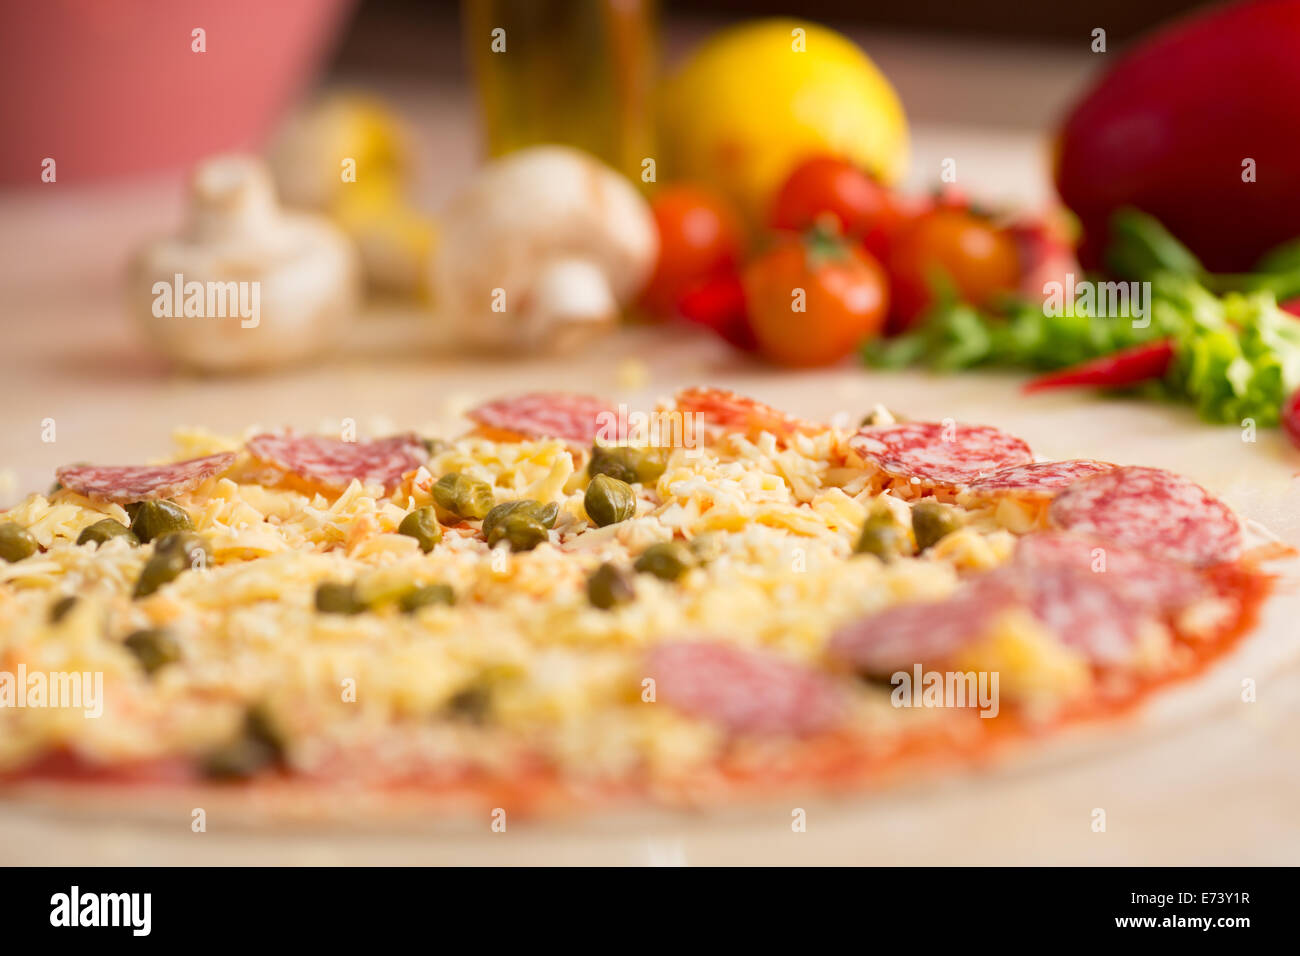 Materie salame pizza sul tavolo con gli ingredienti Foto Stock